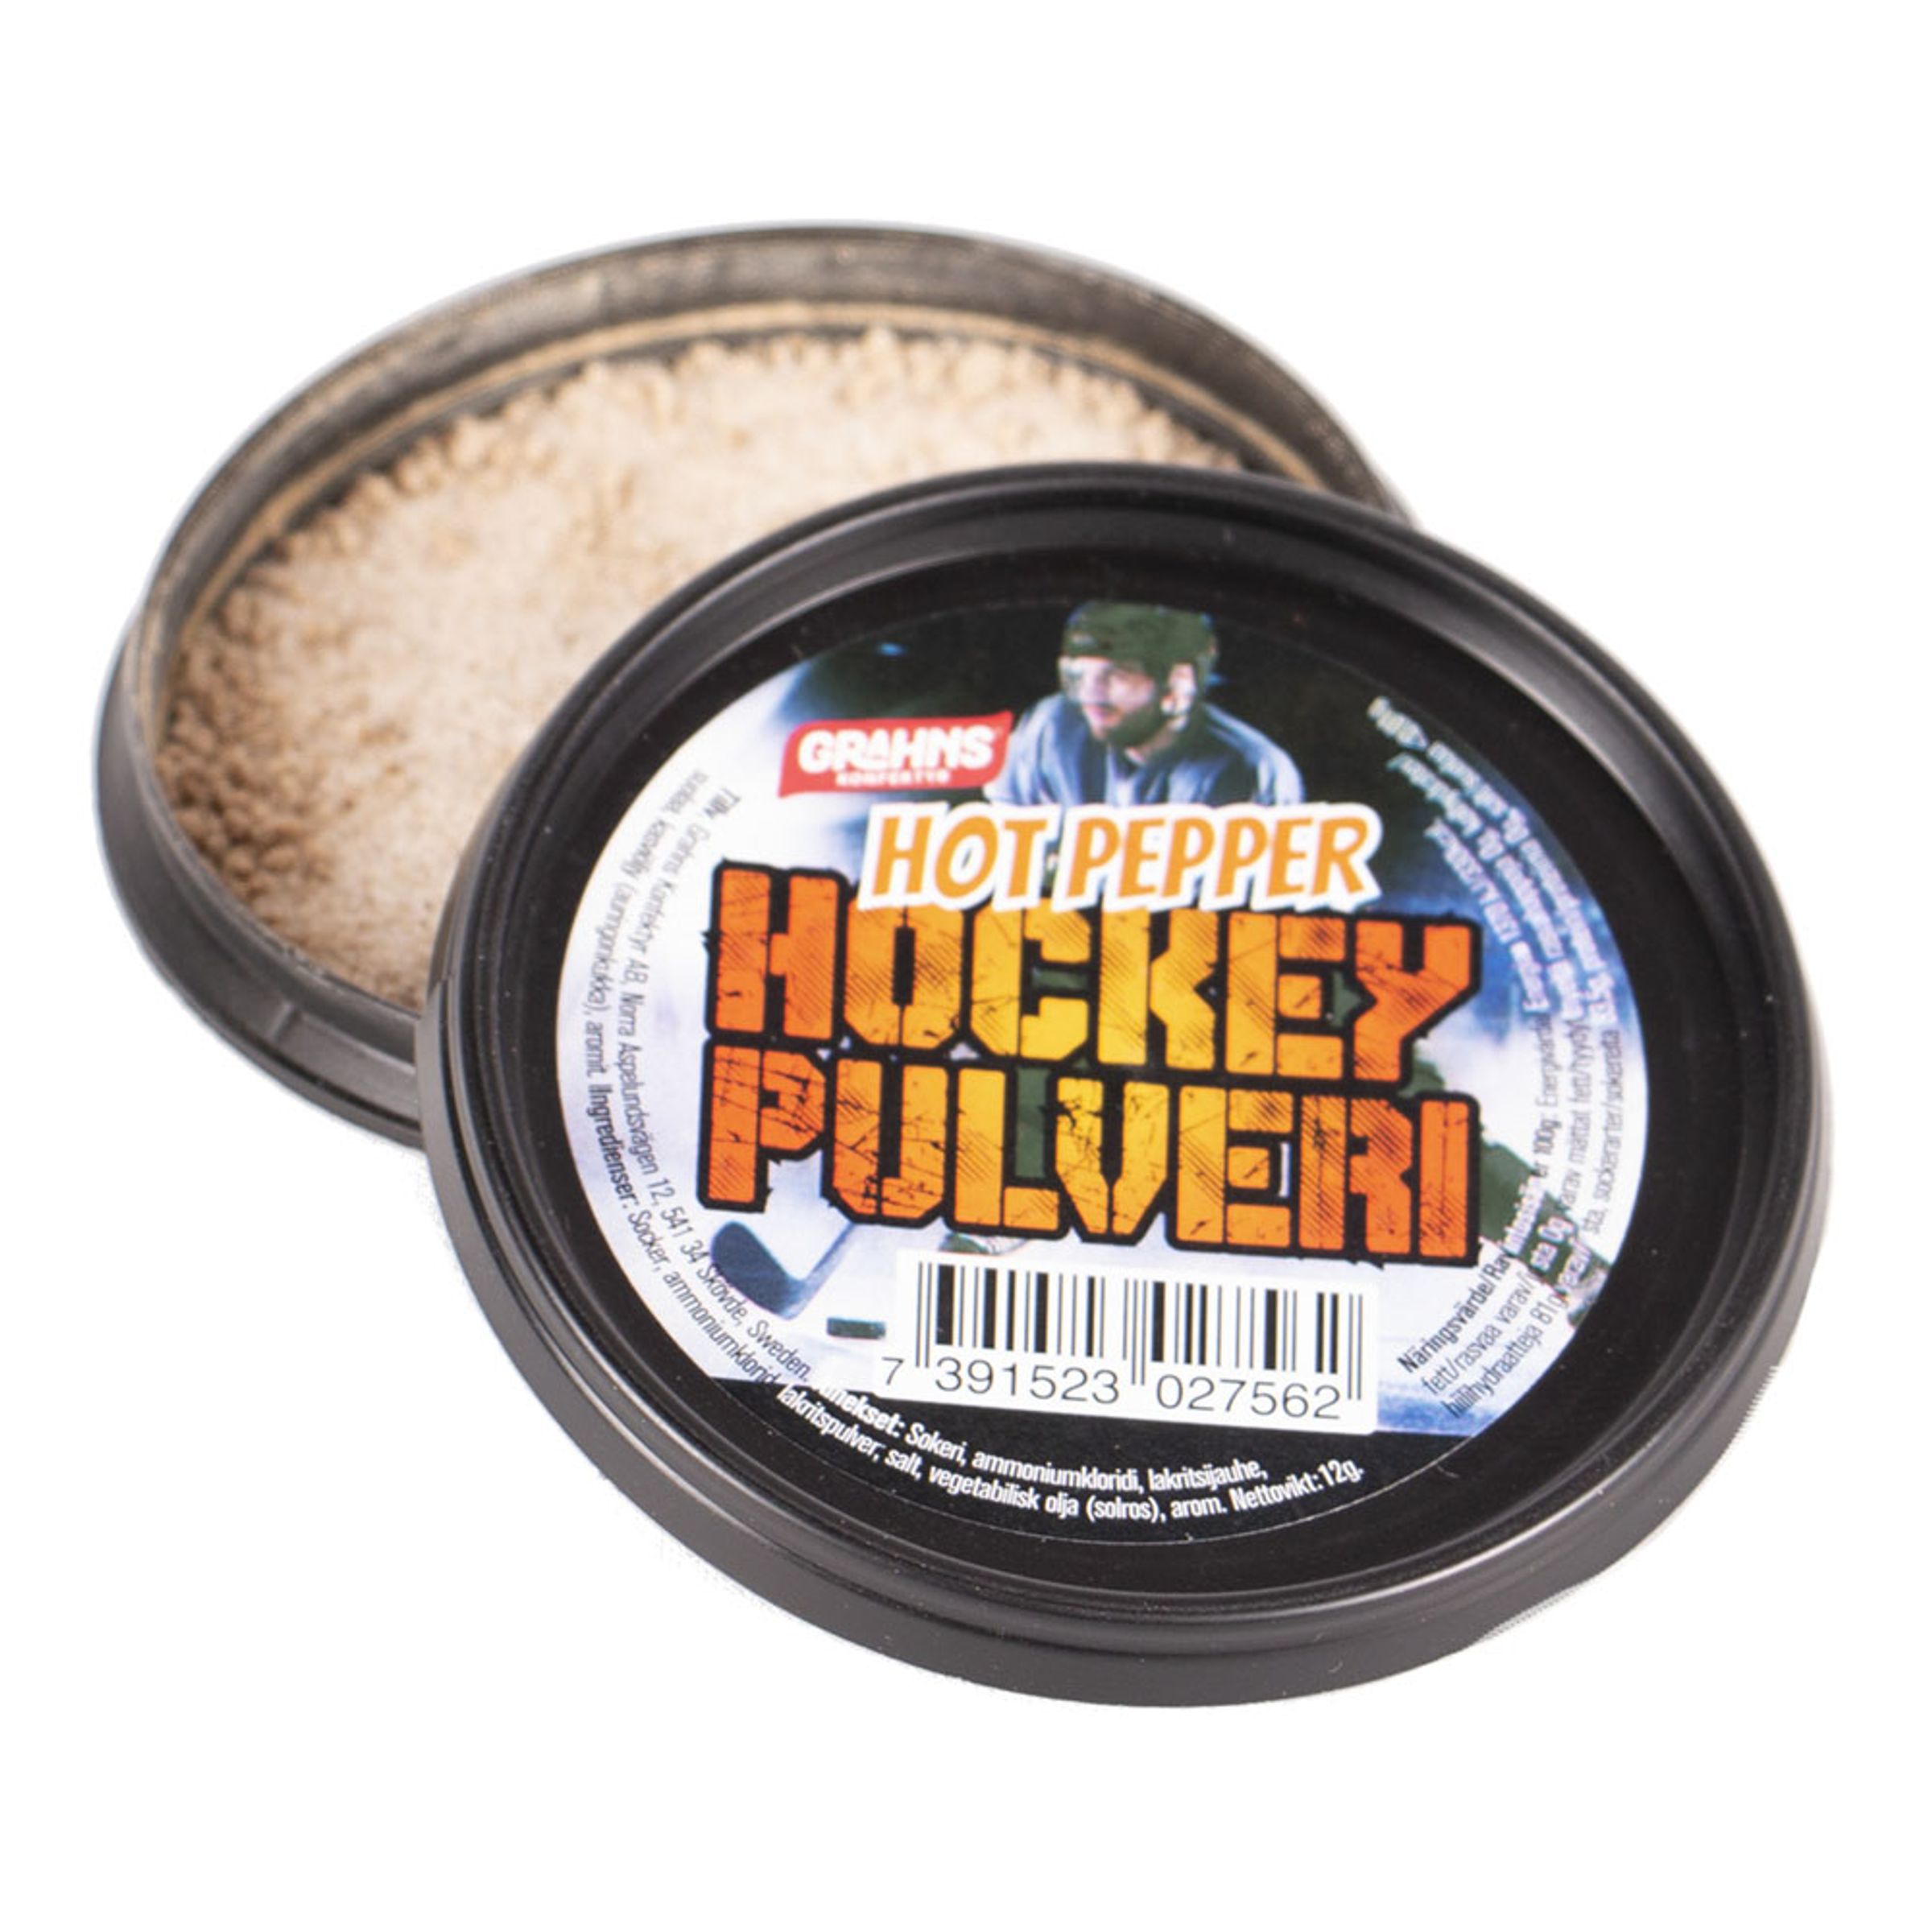 Hockeypulver - Hot Pepper